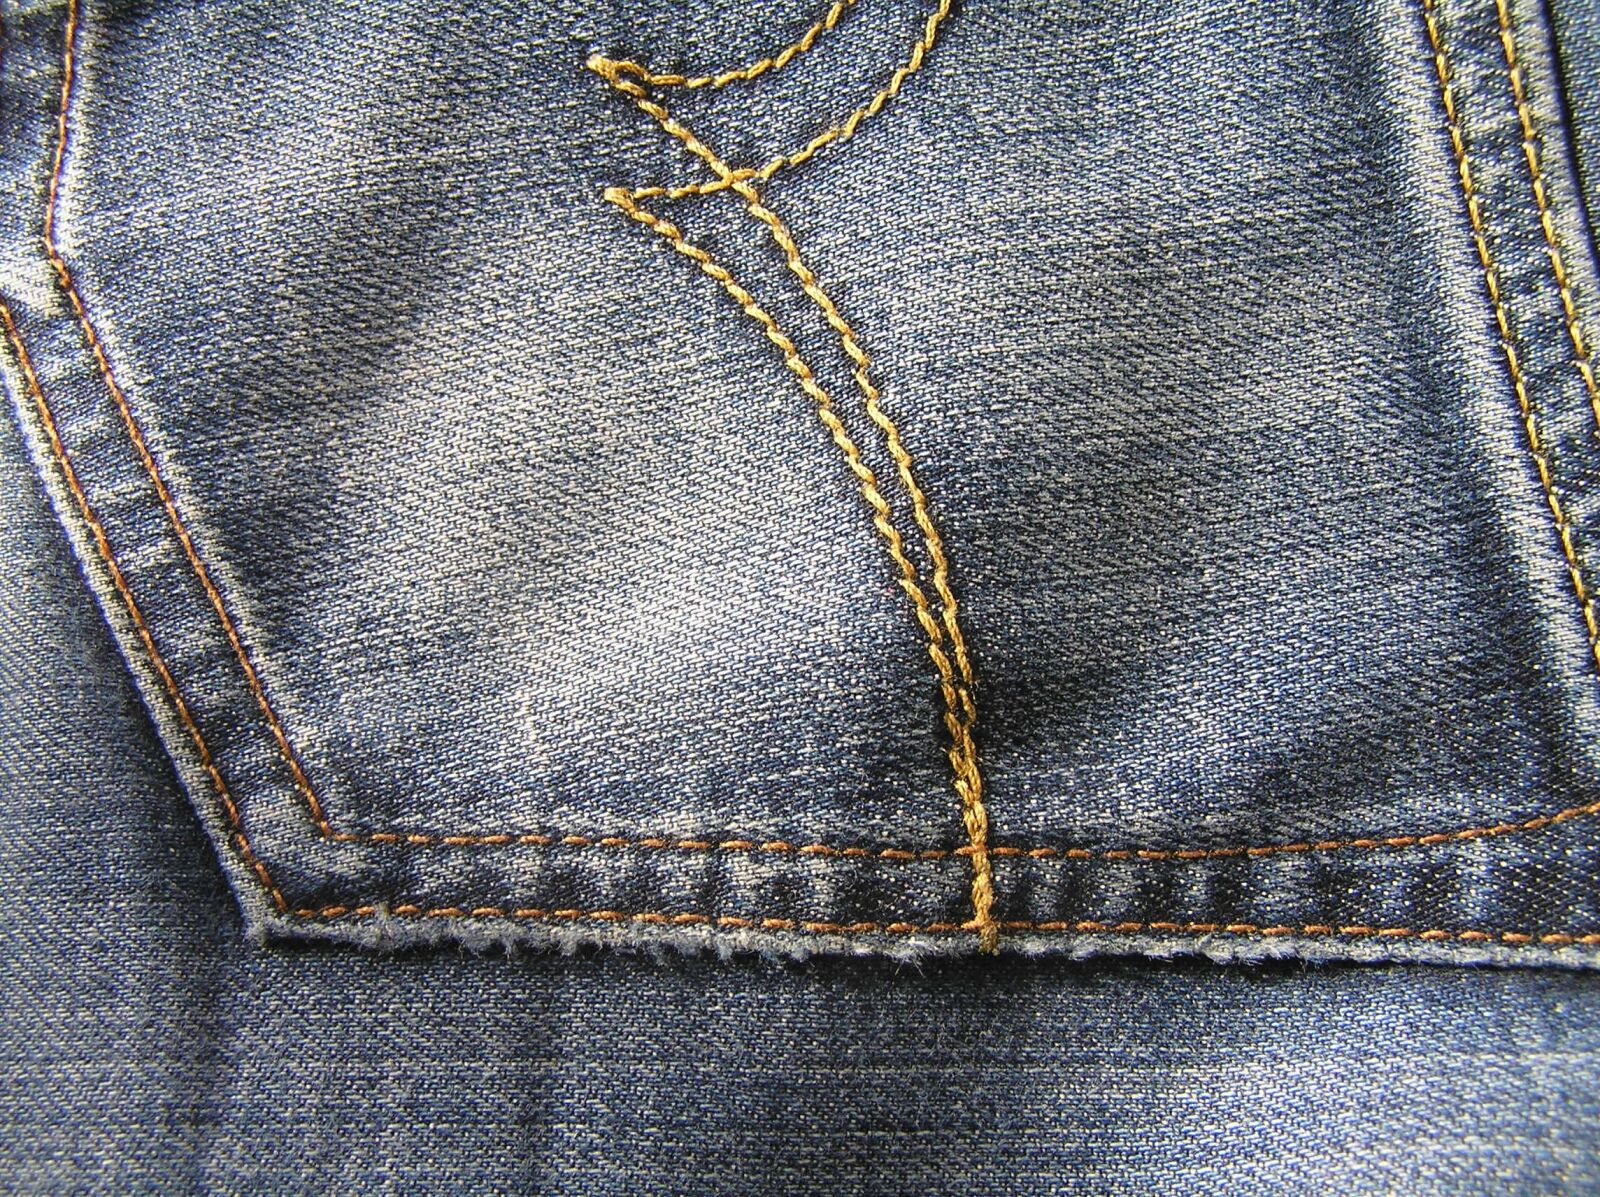 Olympus C765UZ sample photo. Blue jeans, back pocket photography